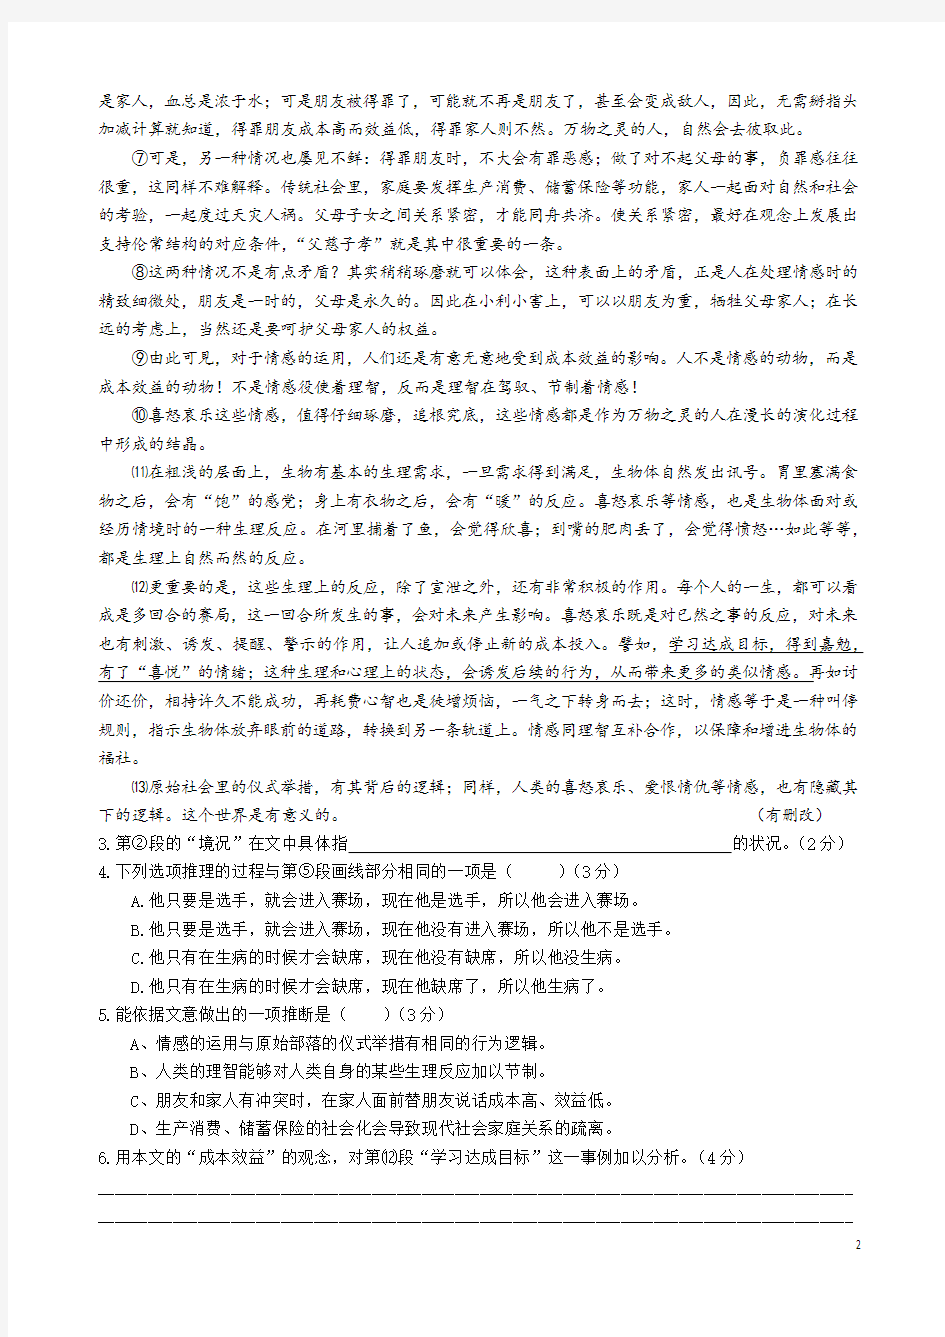 (完整版)2018年上海高考语文试卷及答案